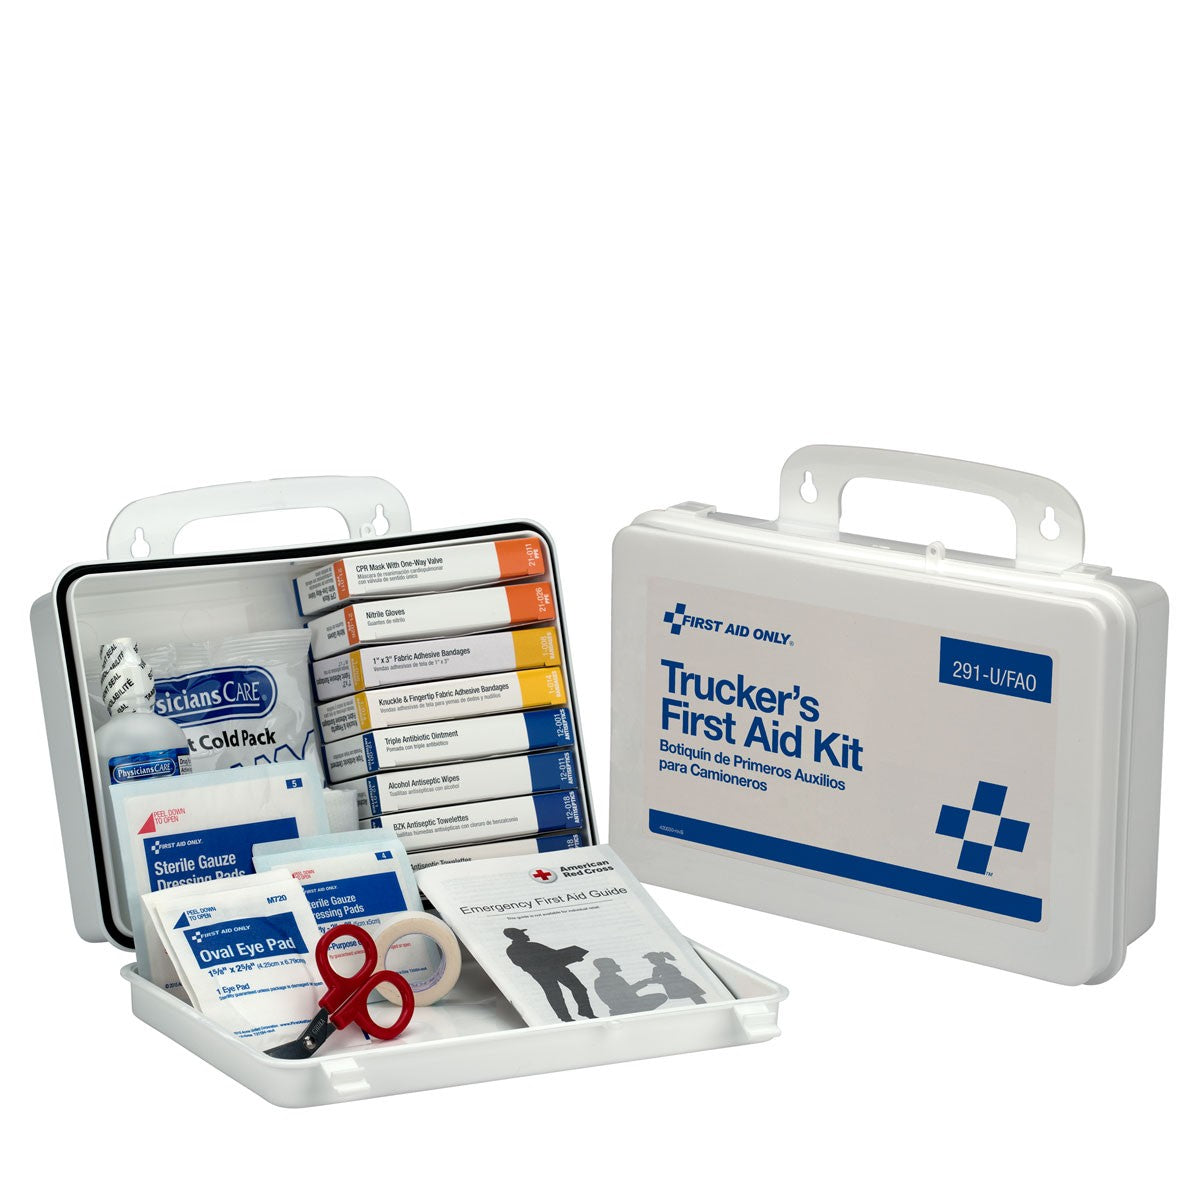 16 Unit Truckers First Aid Kit, Plastic Case - W-291-U/FAO